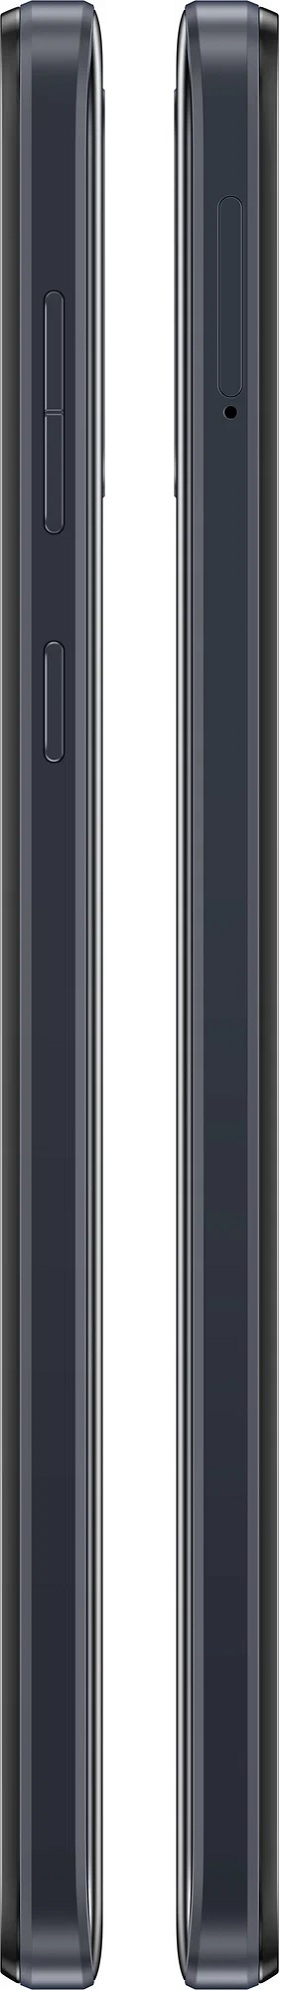 Motorola Moto E13 2/64GB